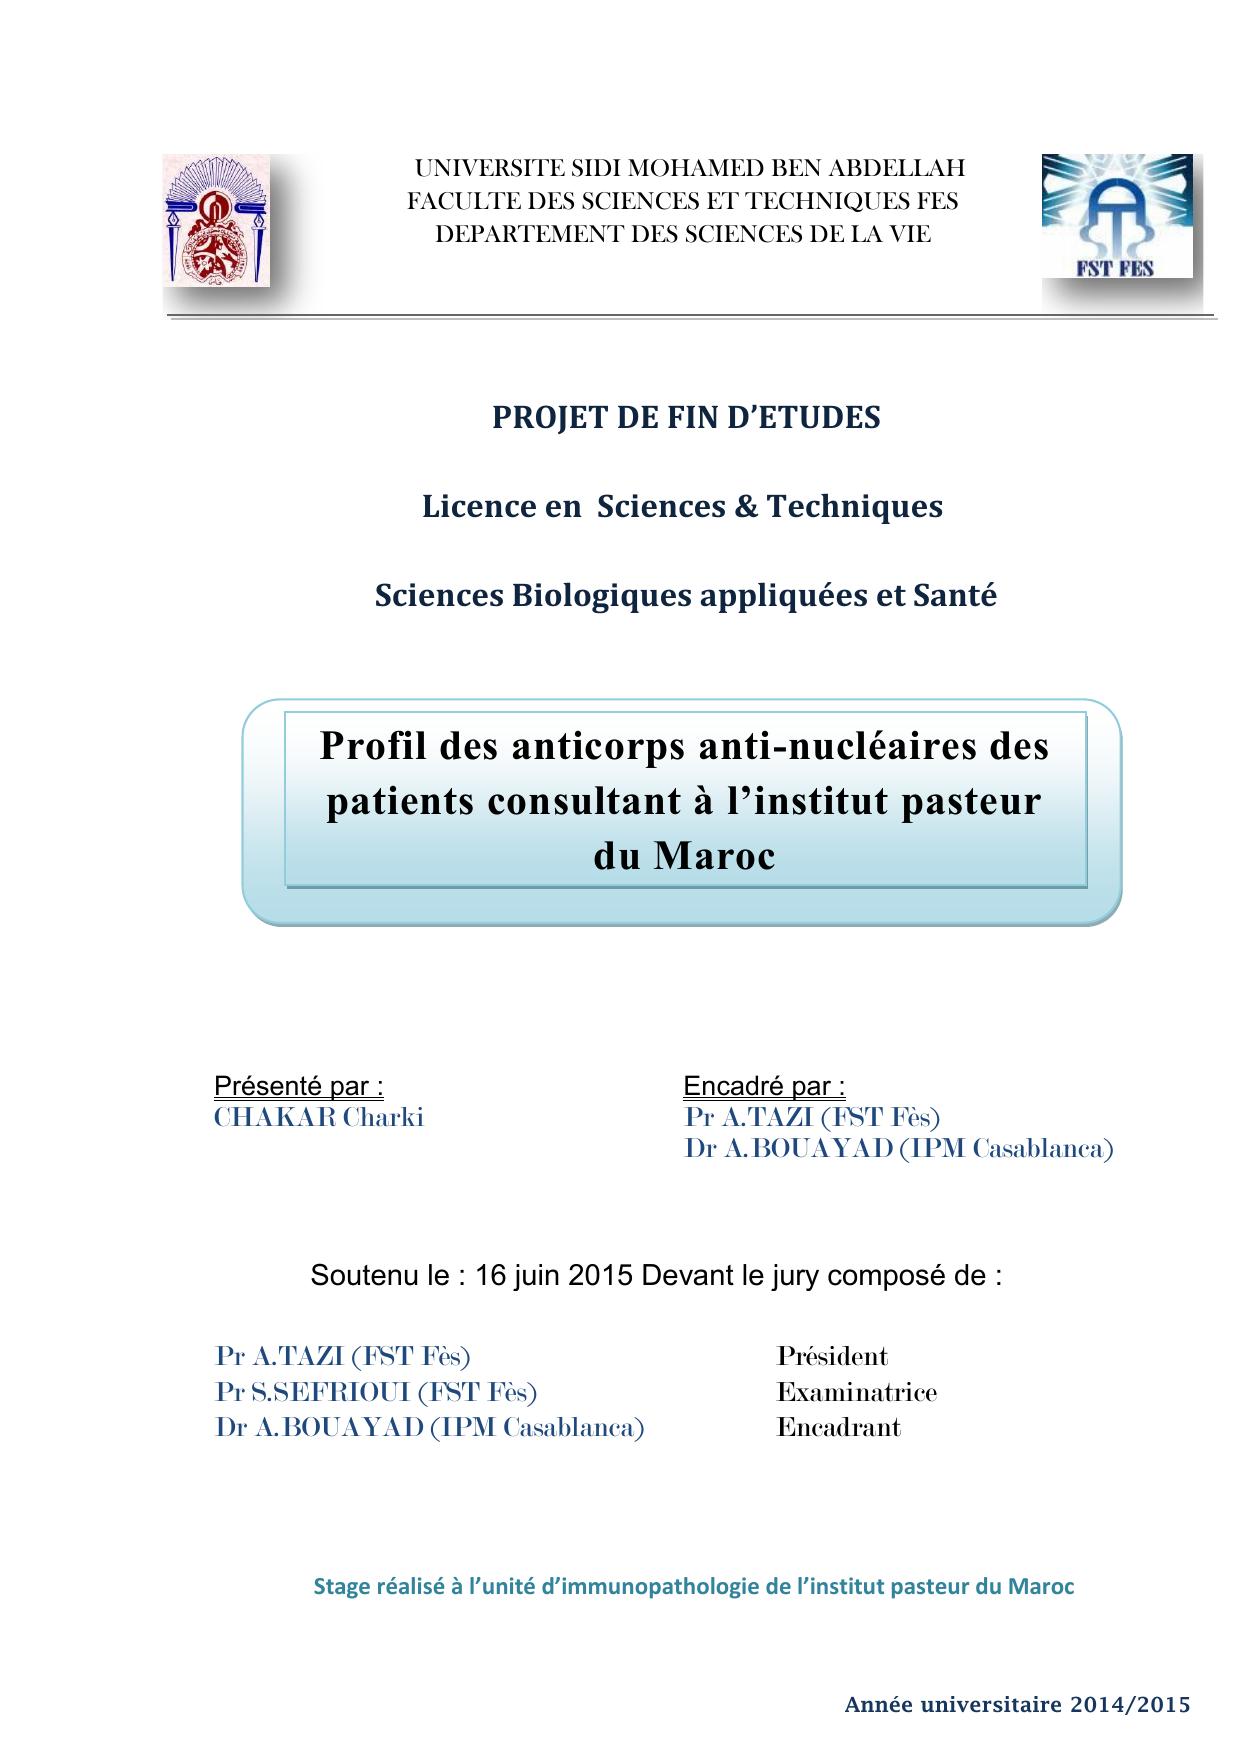 Profil des anticorps anti-nucléaires des patients consultant à l’institut pasteur du Maroc